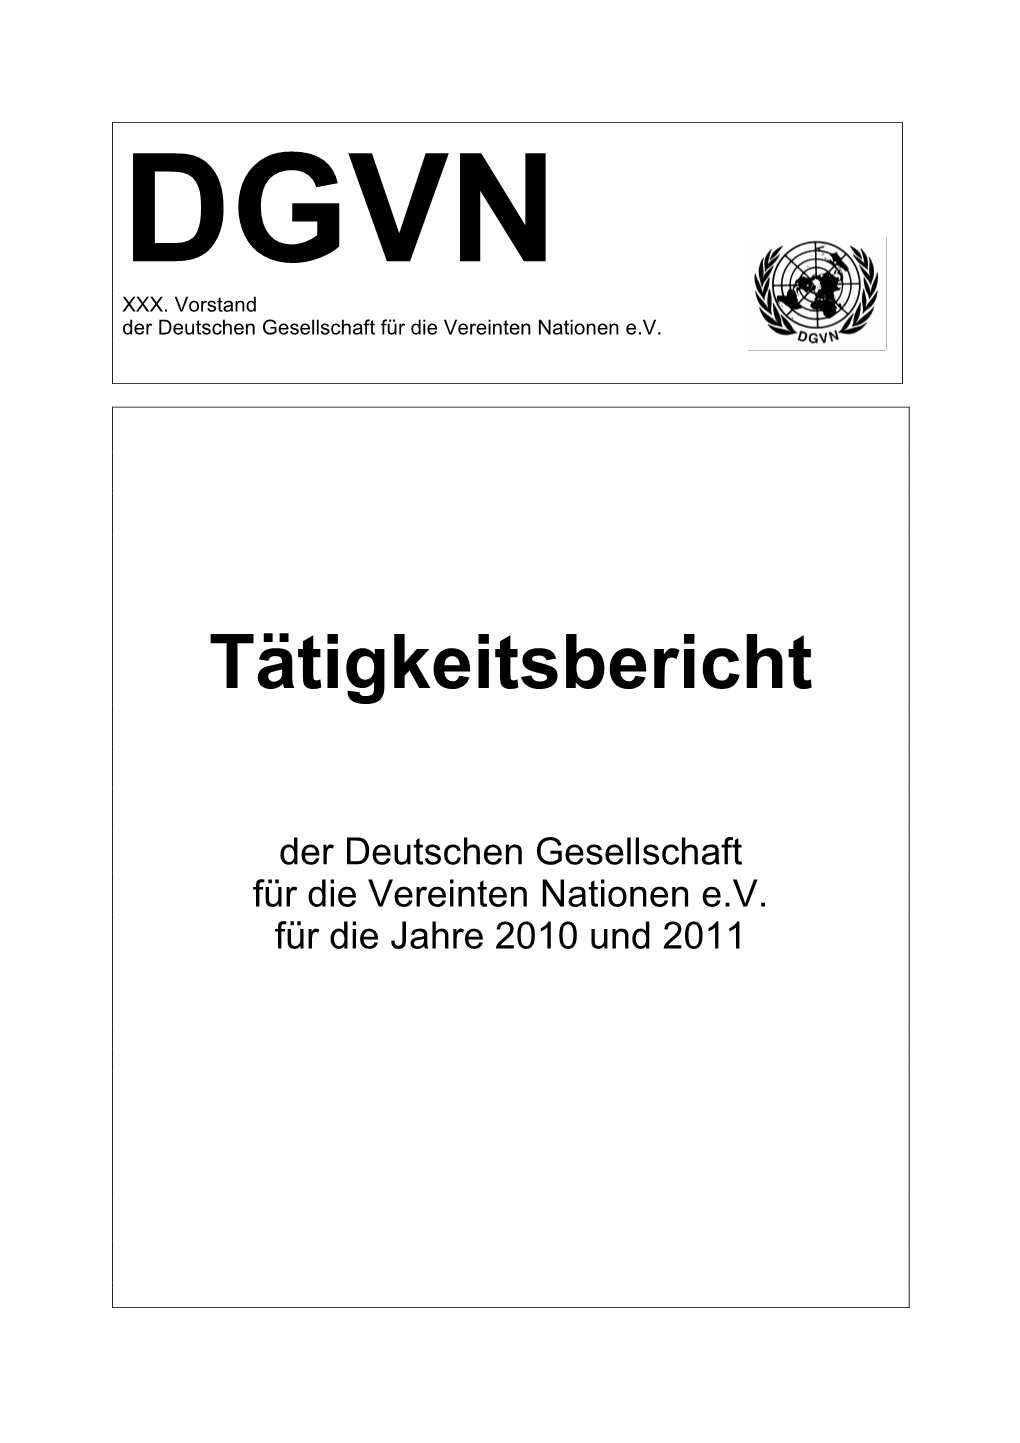 Tätigkeitsbericht 2010/2011